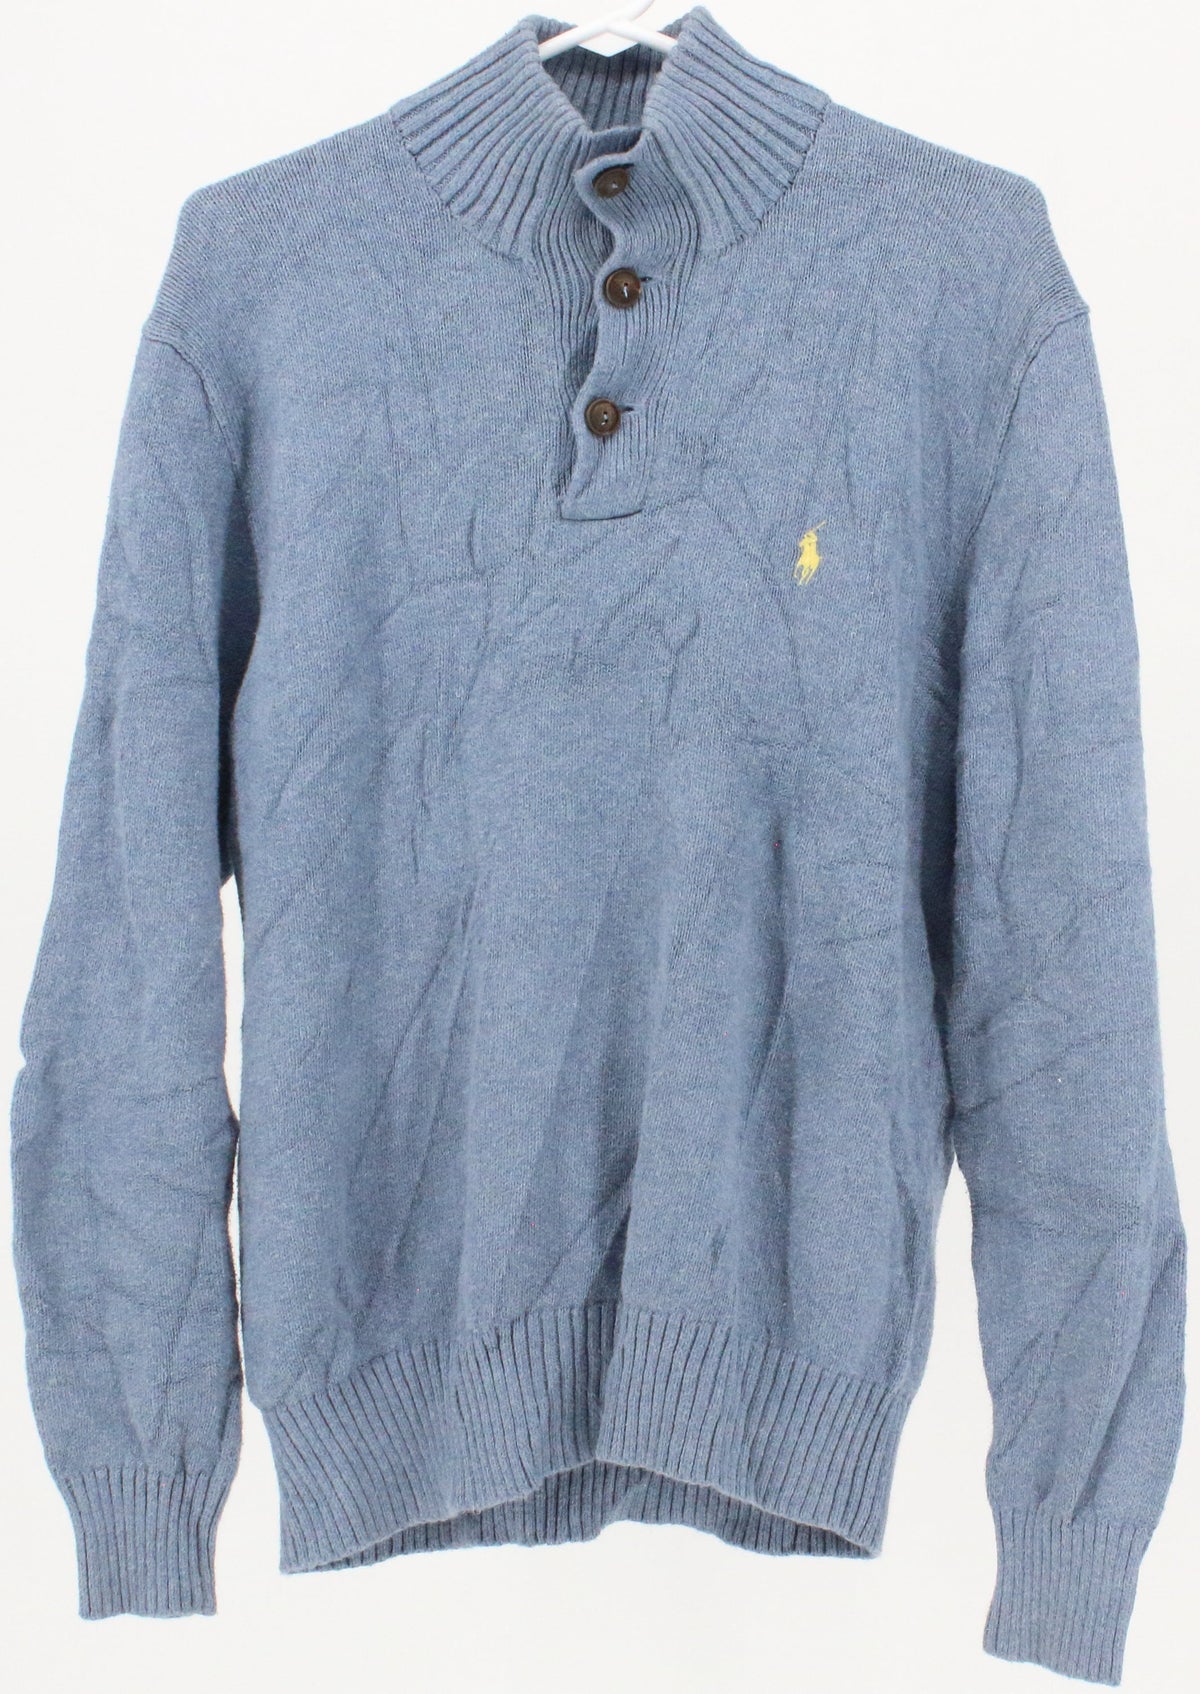 Polo by Ralph Lauren Light Blue Buttons Sweater